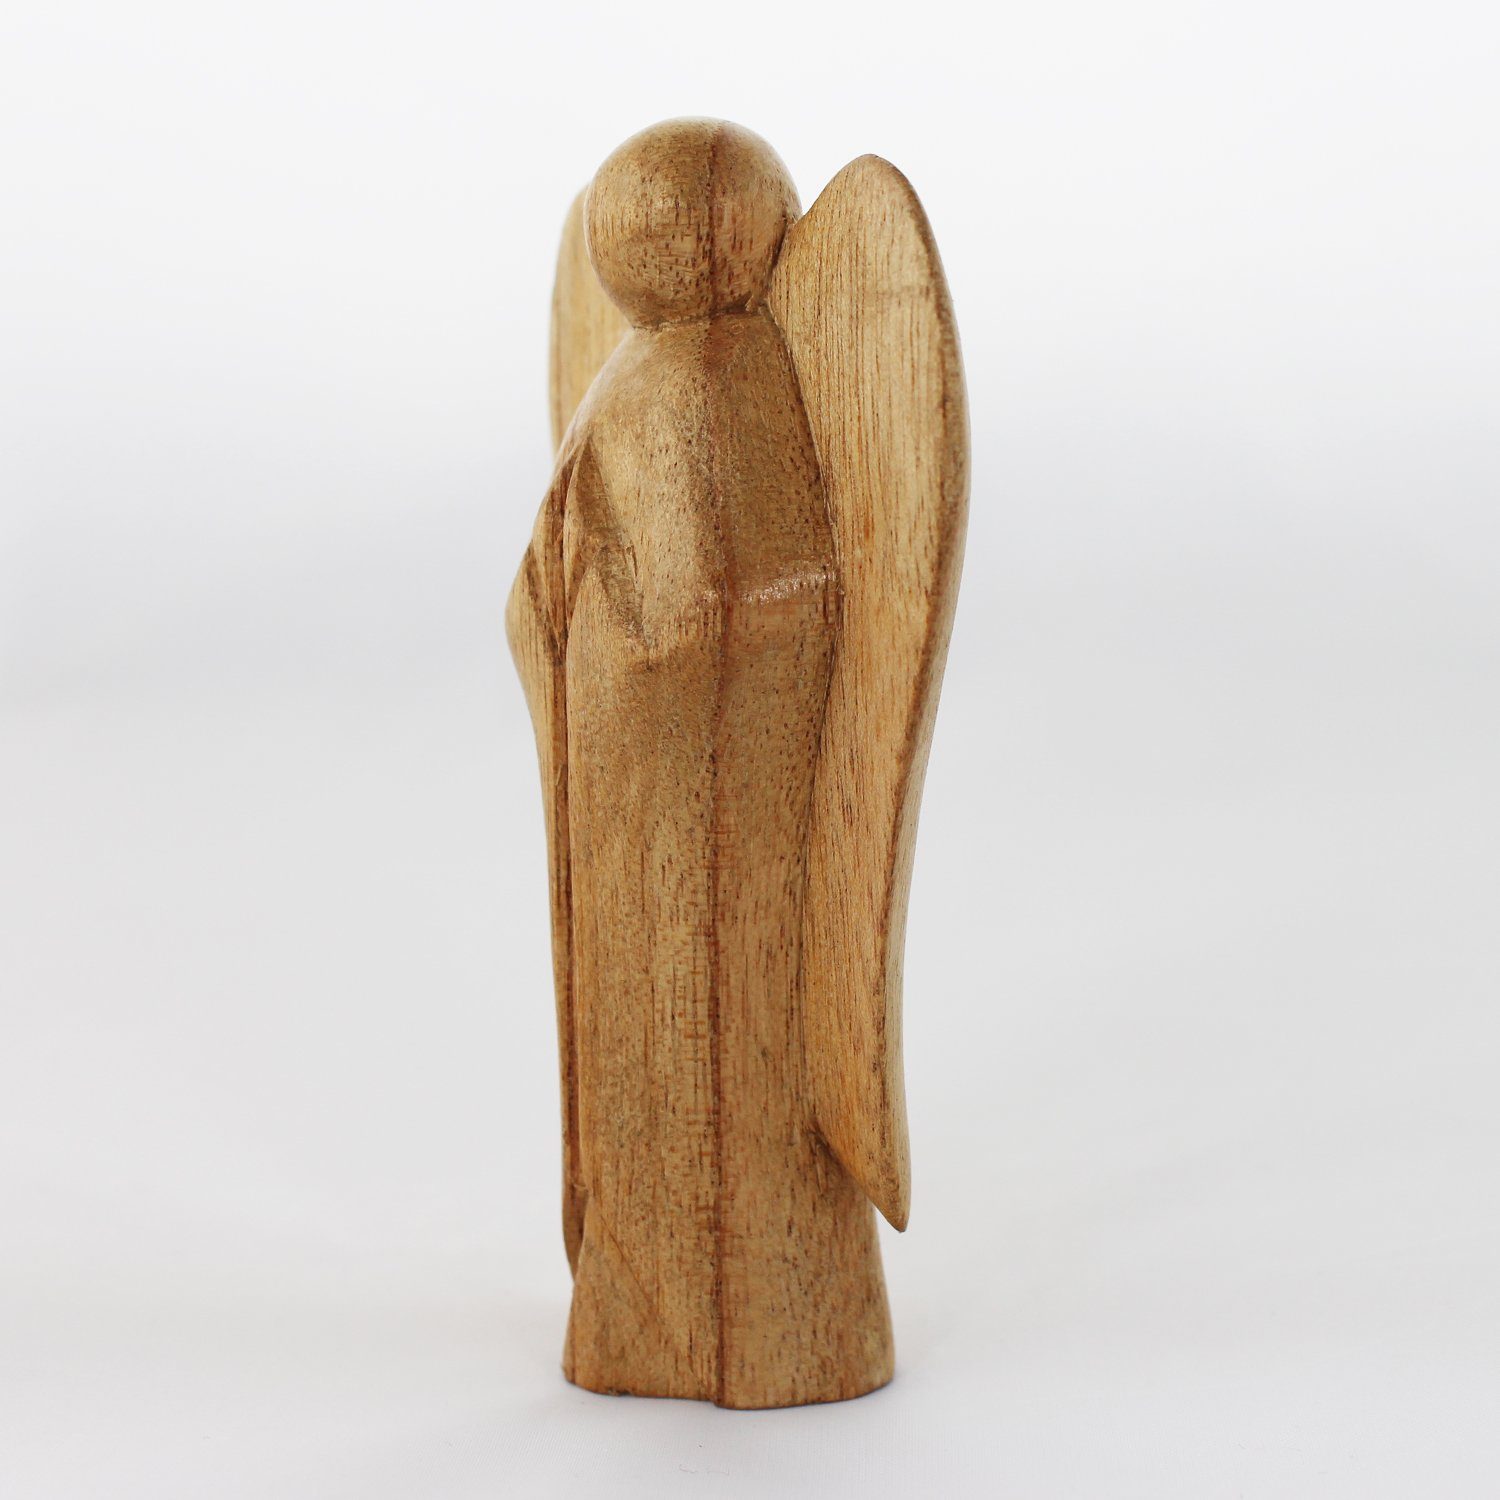 mitienda Aufstellen Engel Deko zum Engel Dekoobjekt Holz aus